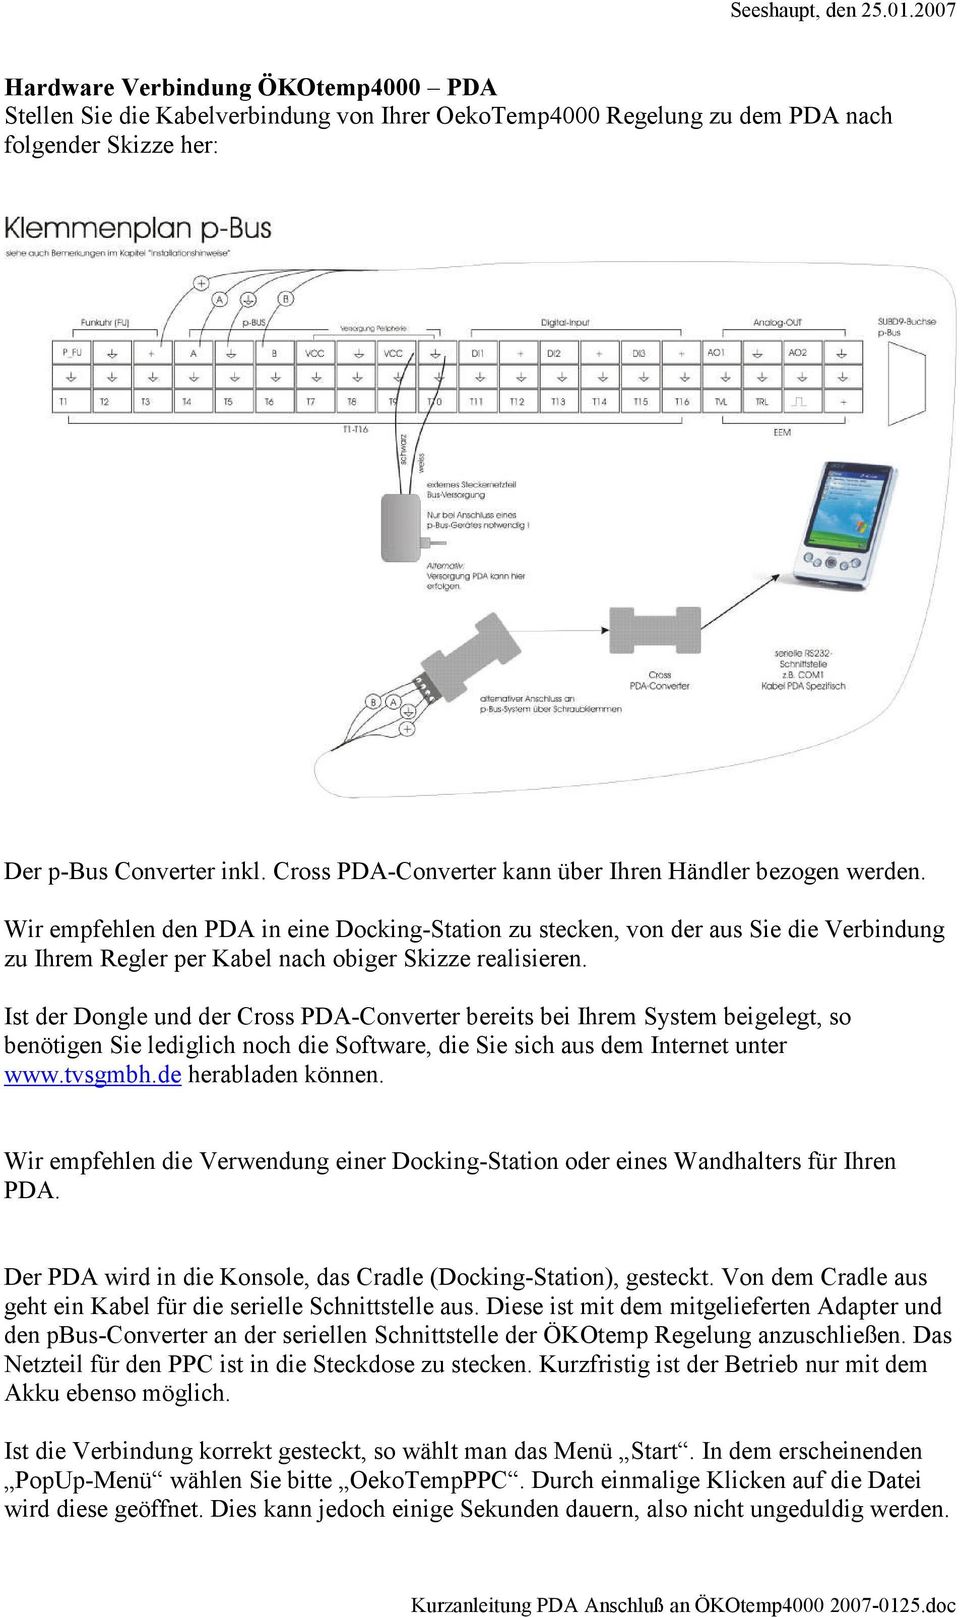 Wir empfehlen den PDA in eine Docking-Station zu stecken, von der aus Sie die Verbindung zu Ihrem Regler per Kabel nach obiger Skizze realisieren.